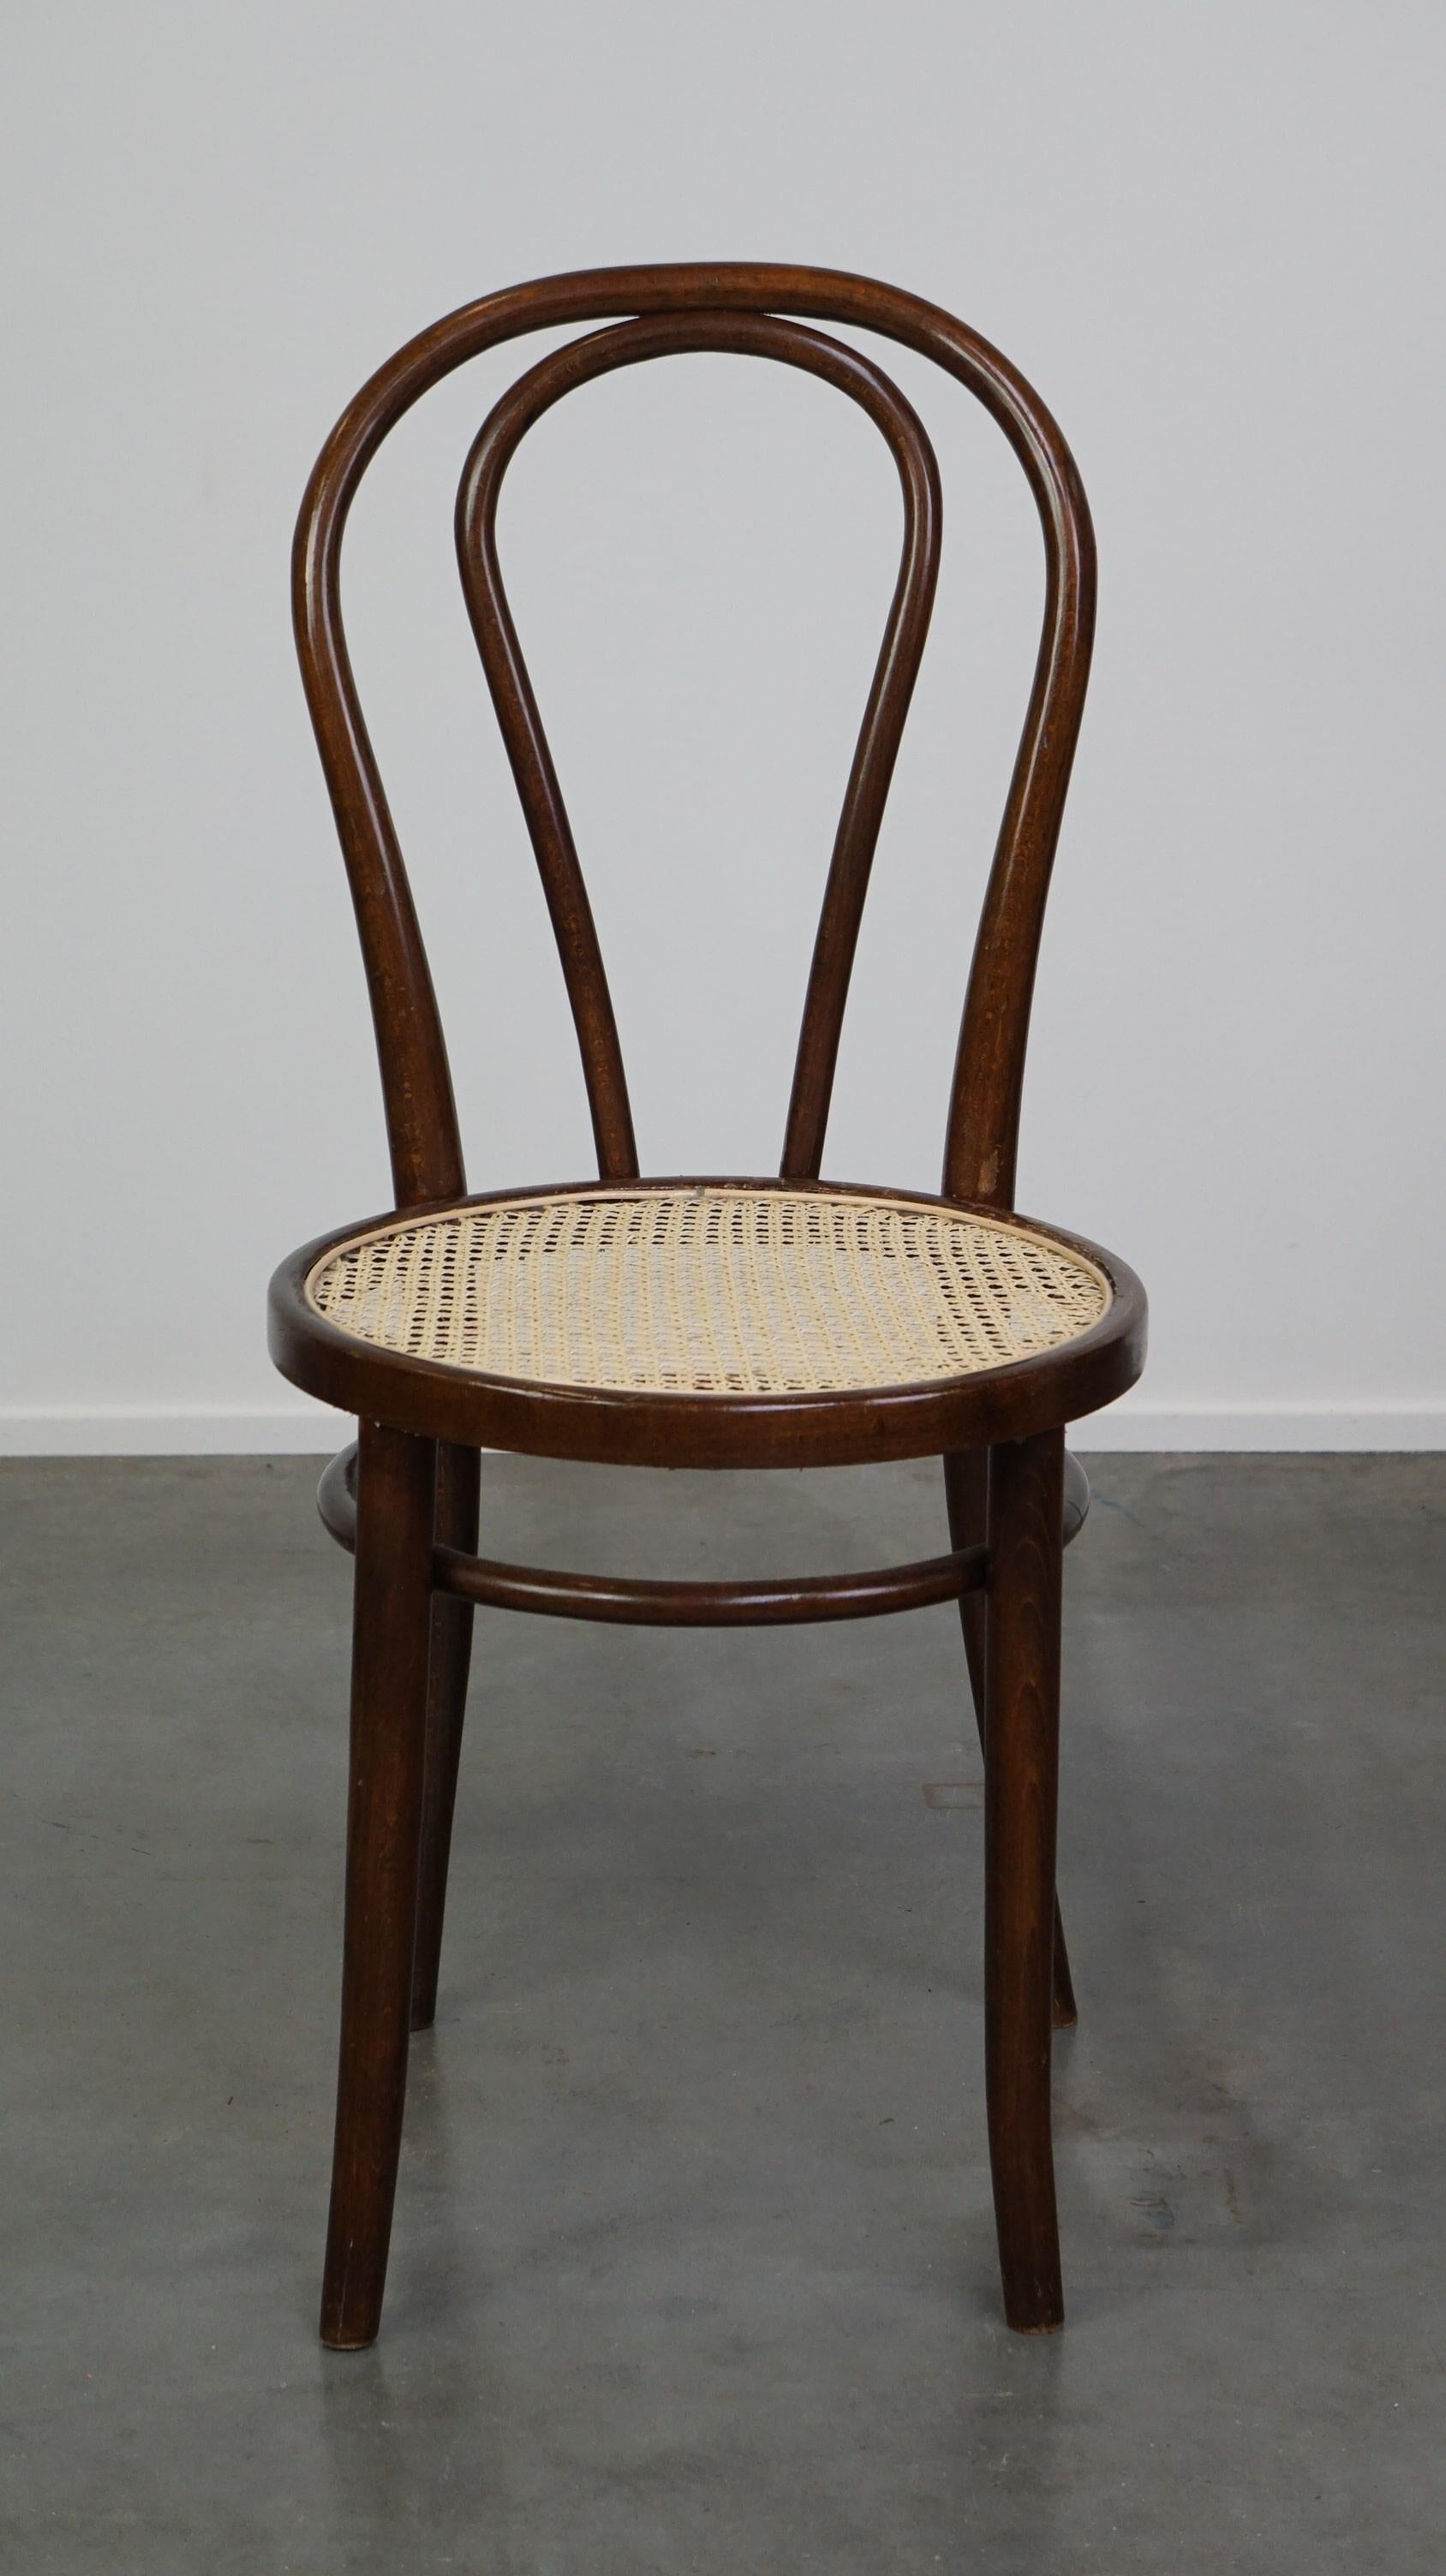 Der Stuhl Nr. 18, auch bekannt als Bistrostuhl, wurde von Thonet entworfen und war neben dem Stuhl Nr. 14 einer der berühmtesten Stühle. 14. Sie haben beide eine halbrunde Rückenlehne. Dieser Stuhl wurde von dem österreichischen Designer Josef